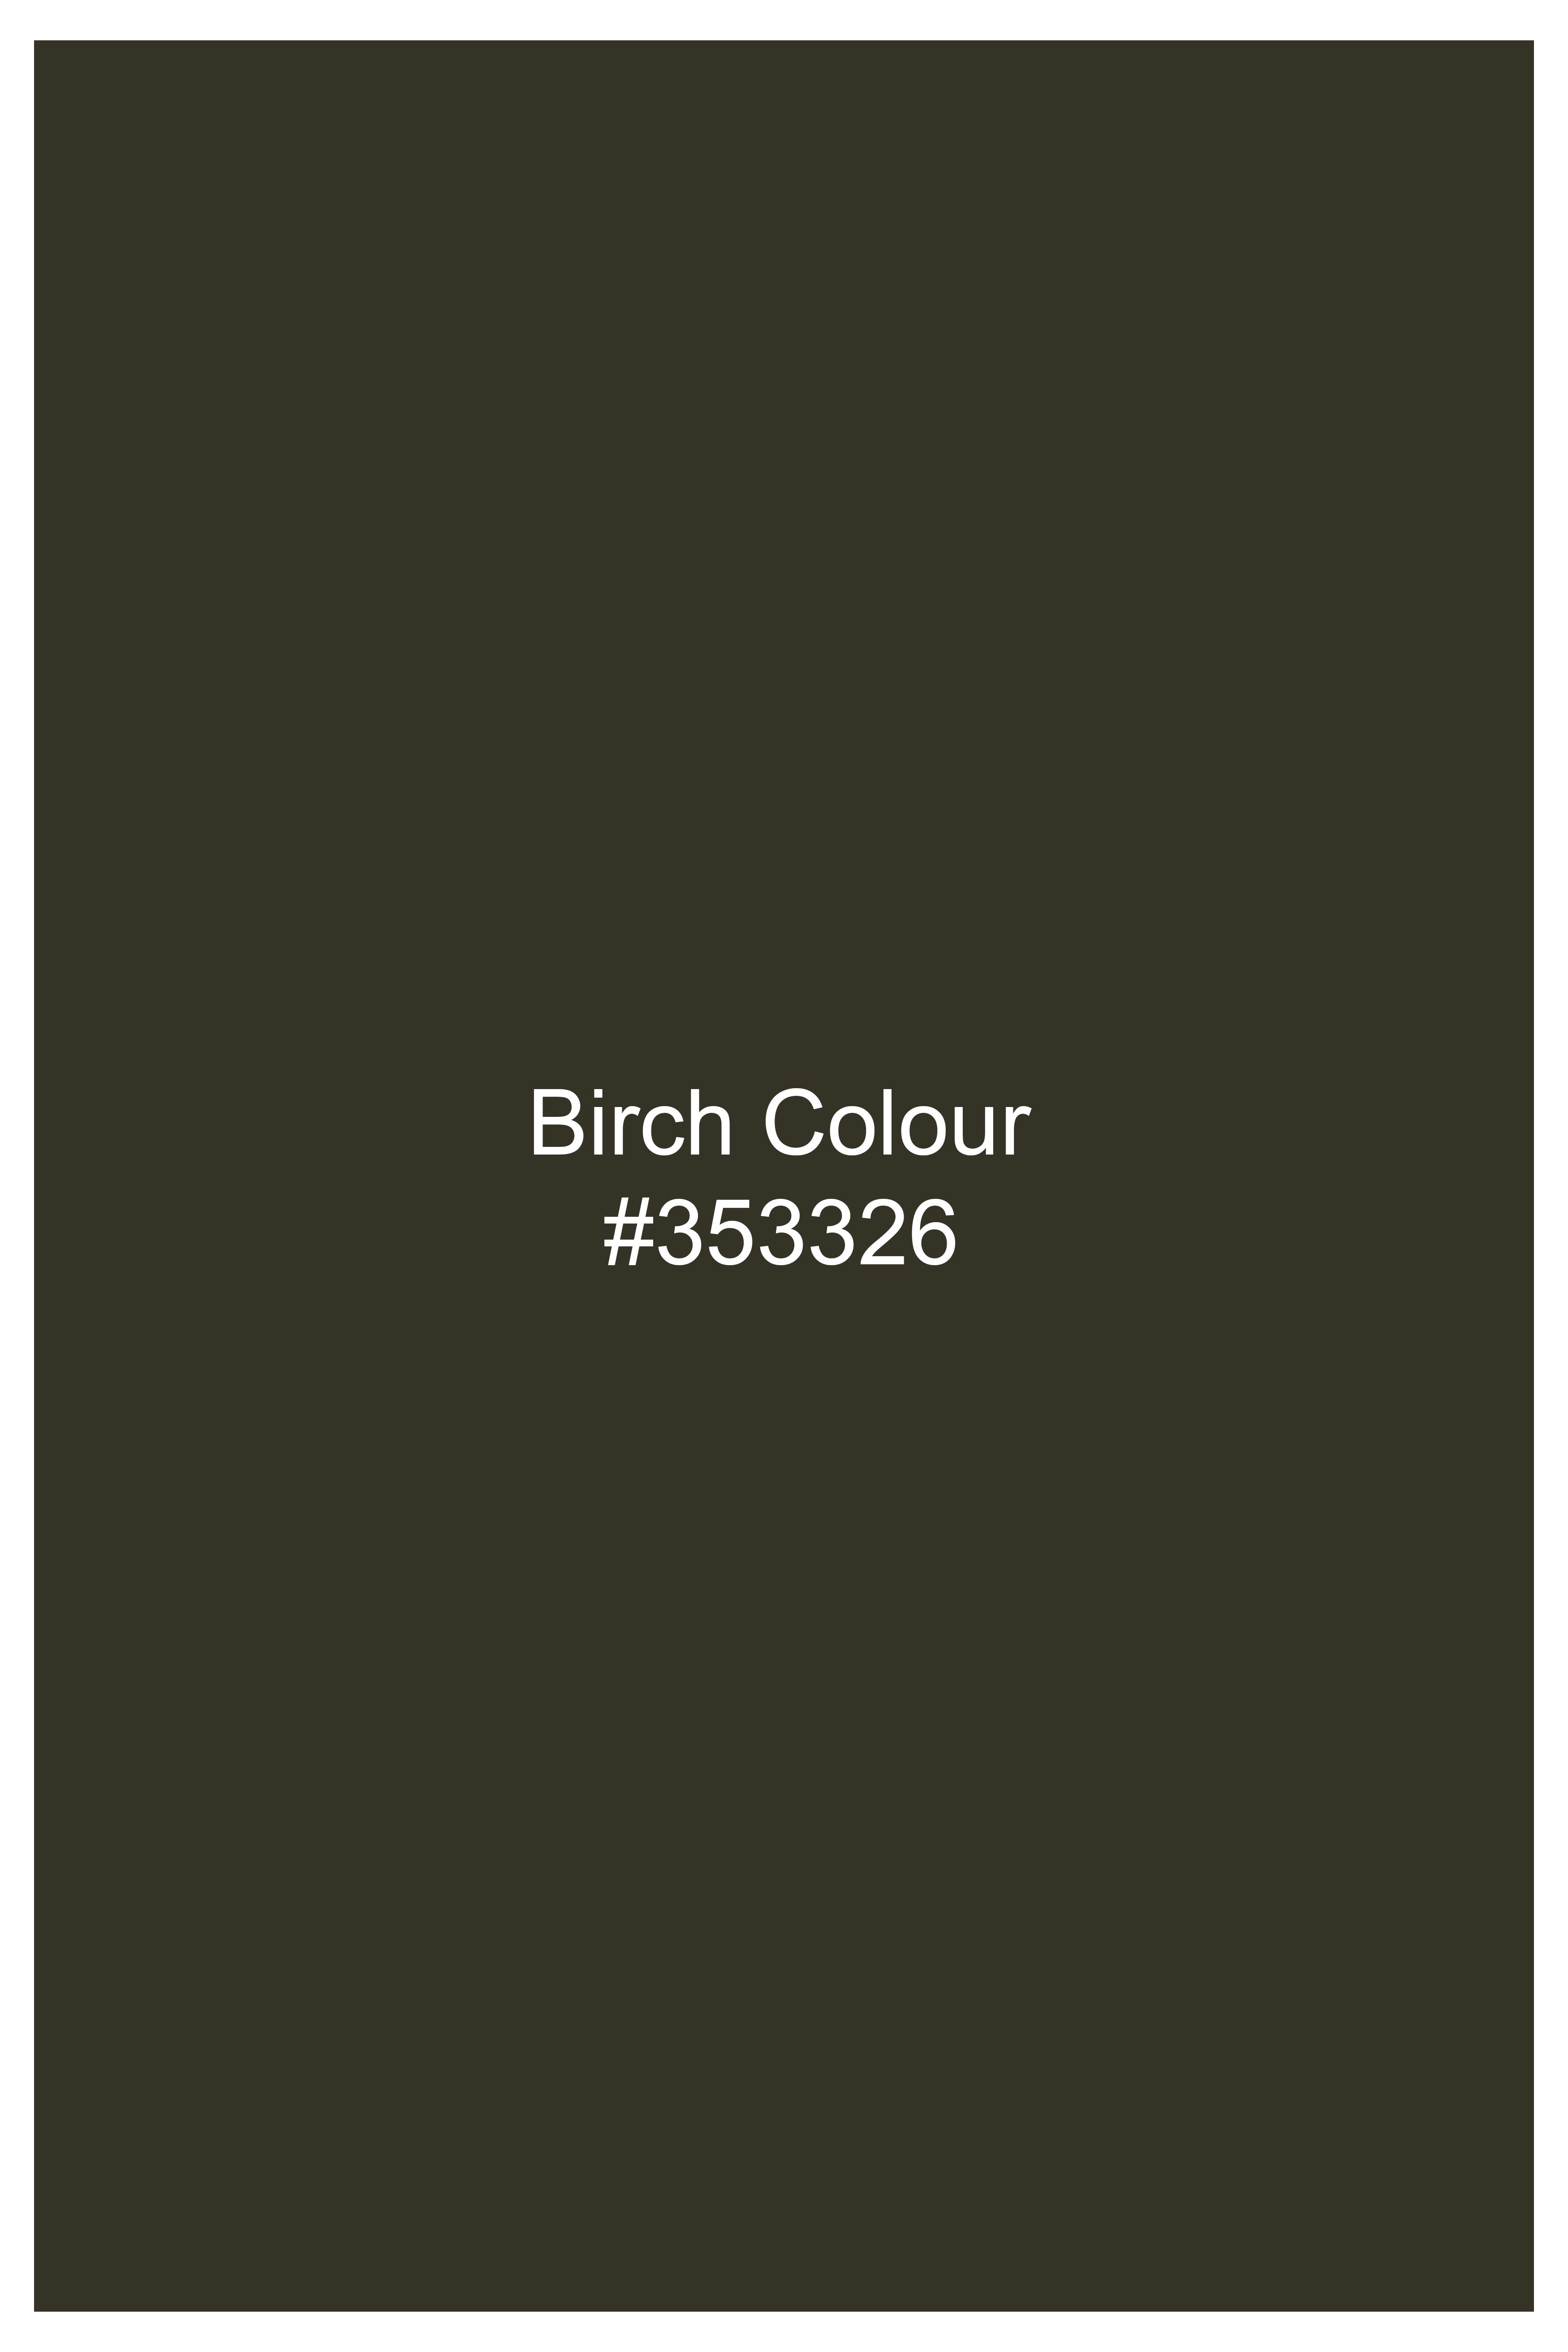 Birch Green Wool Rich Tuxedo Designer Blazer BL2835-D385-36, BL2835-D385-38, BL2835-D385-40, BL2835-D385-42, BL2835-D385-44, BL2835-D385-46, BL2835-D385-48, BL2835-D385-50, BL2835-D385-52, BL2835-D385-54, BL2835-D385-56, BL2835-D385-58, BL2835-D385-60